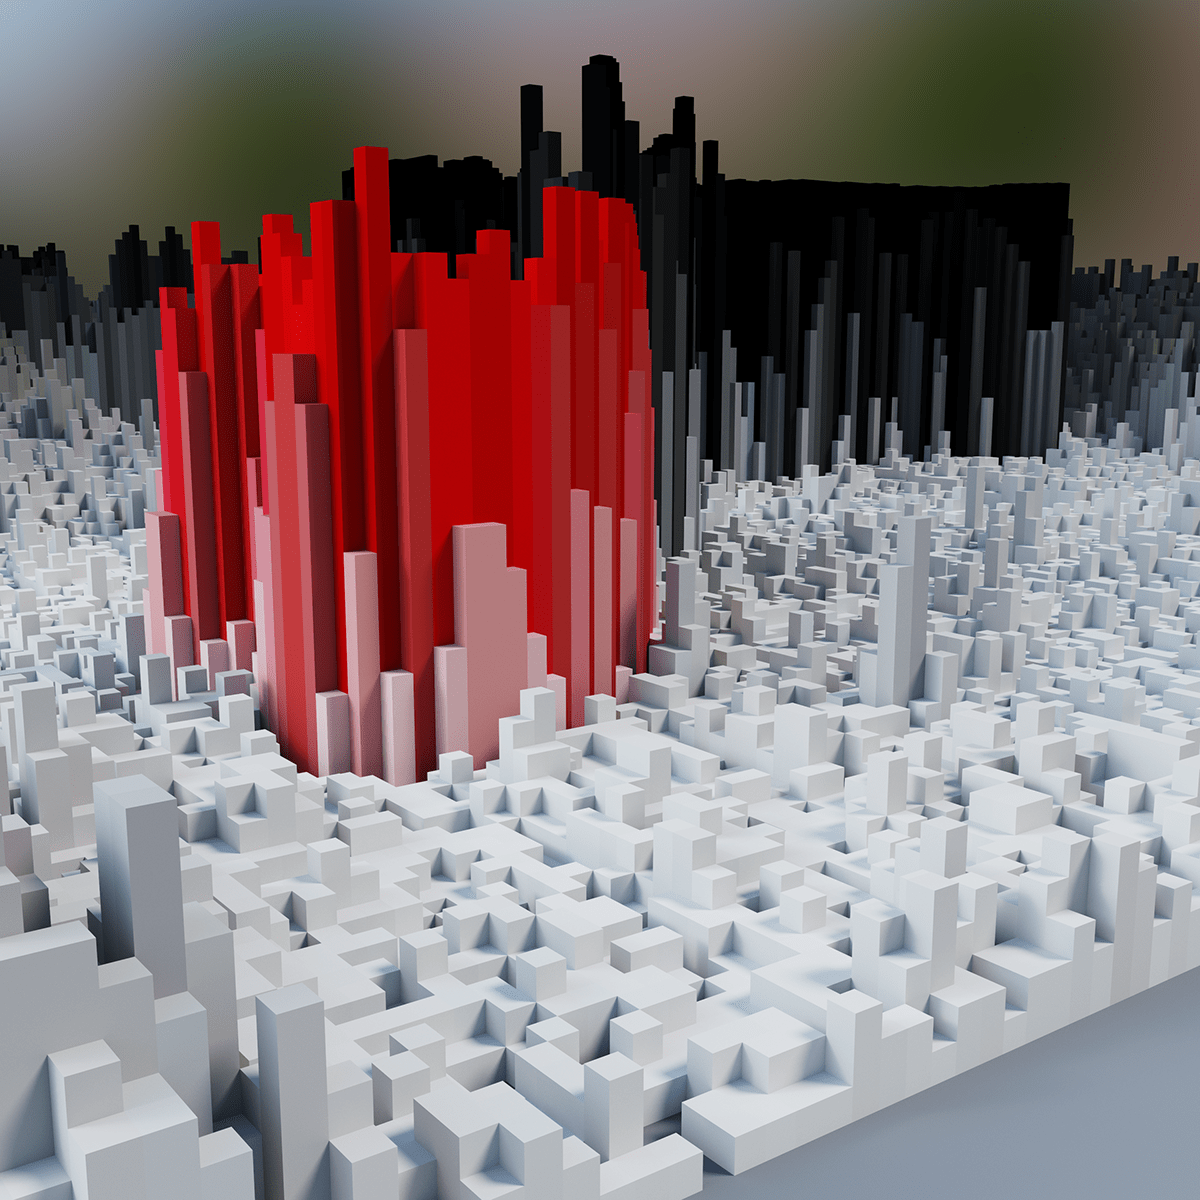 3D art arte blender conceptual Leonardo pixel voxel voxel art